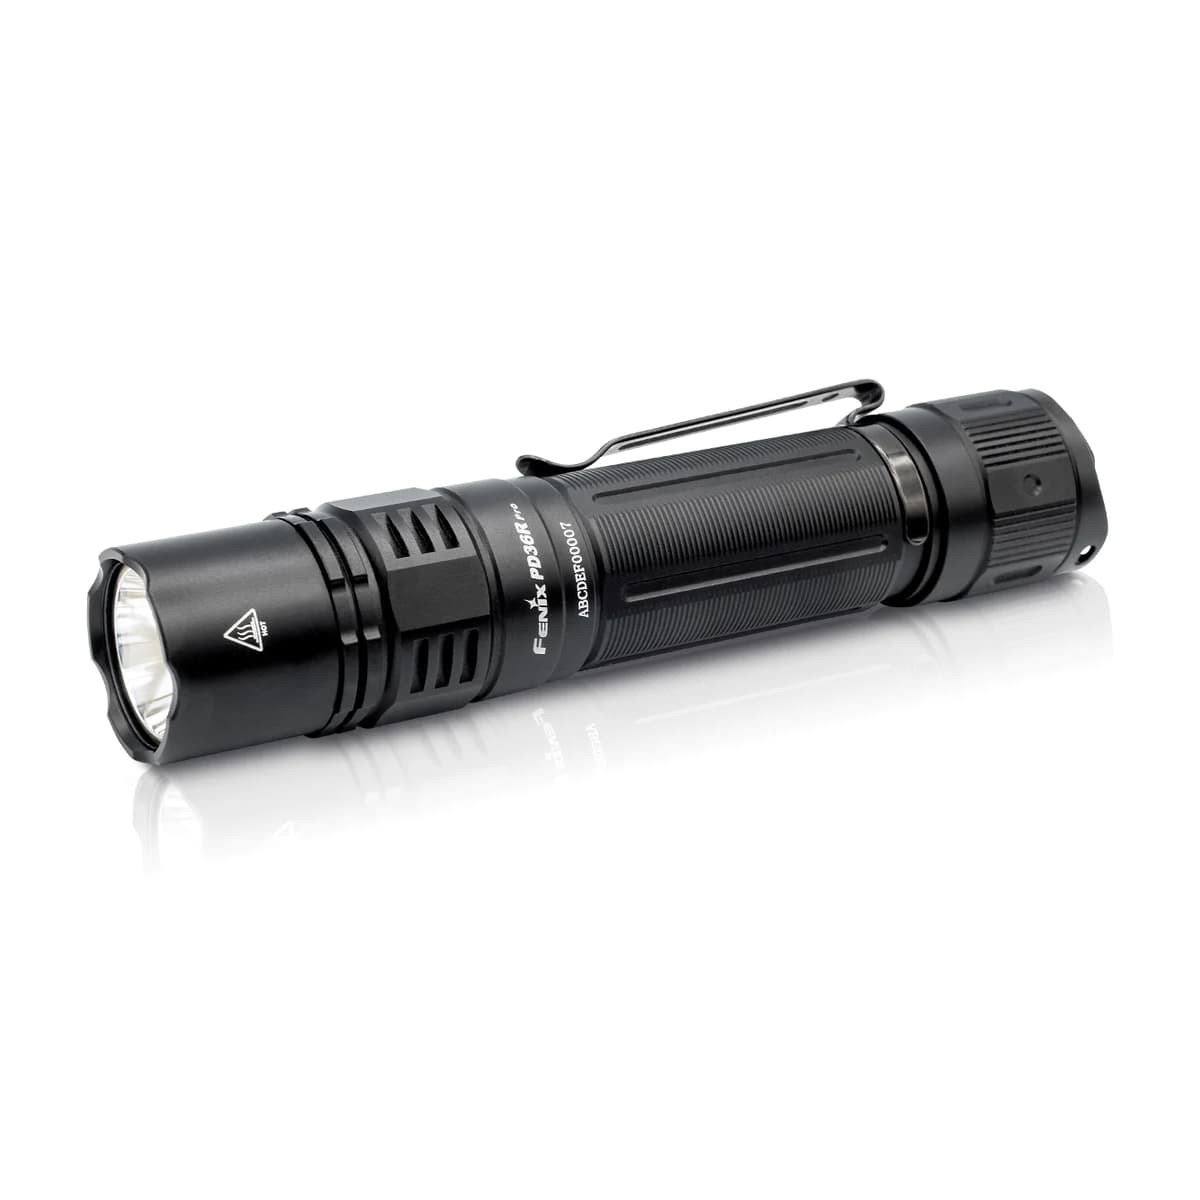 Fenix PD36R Pro Flashlight